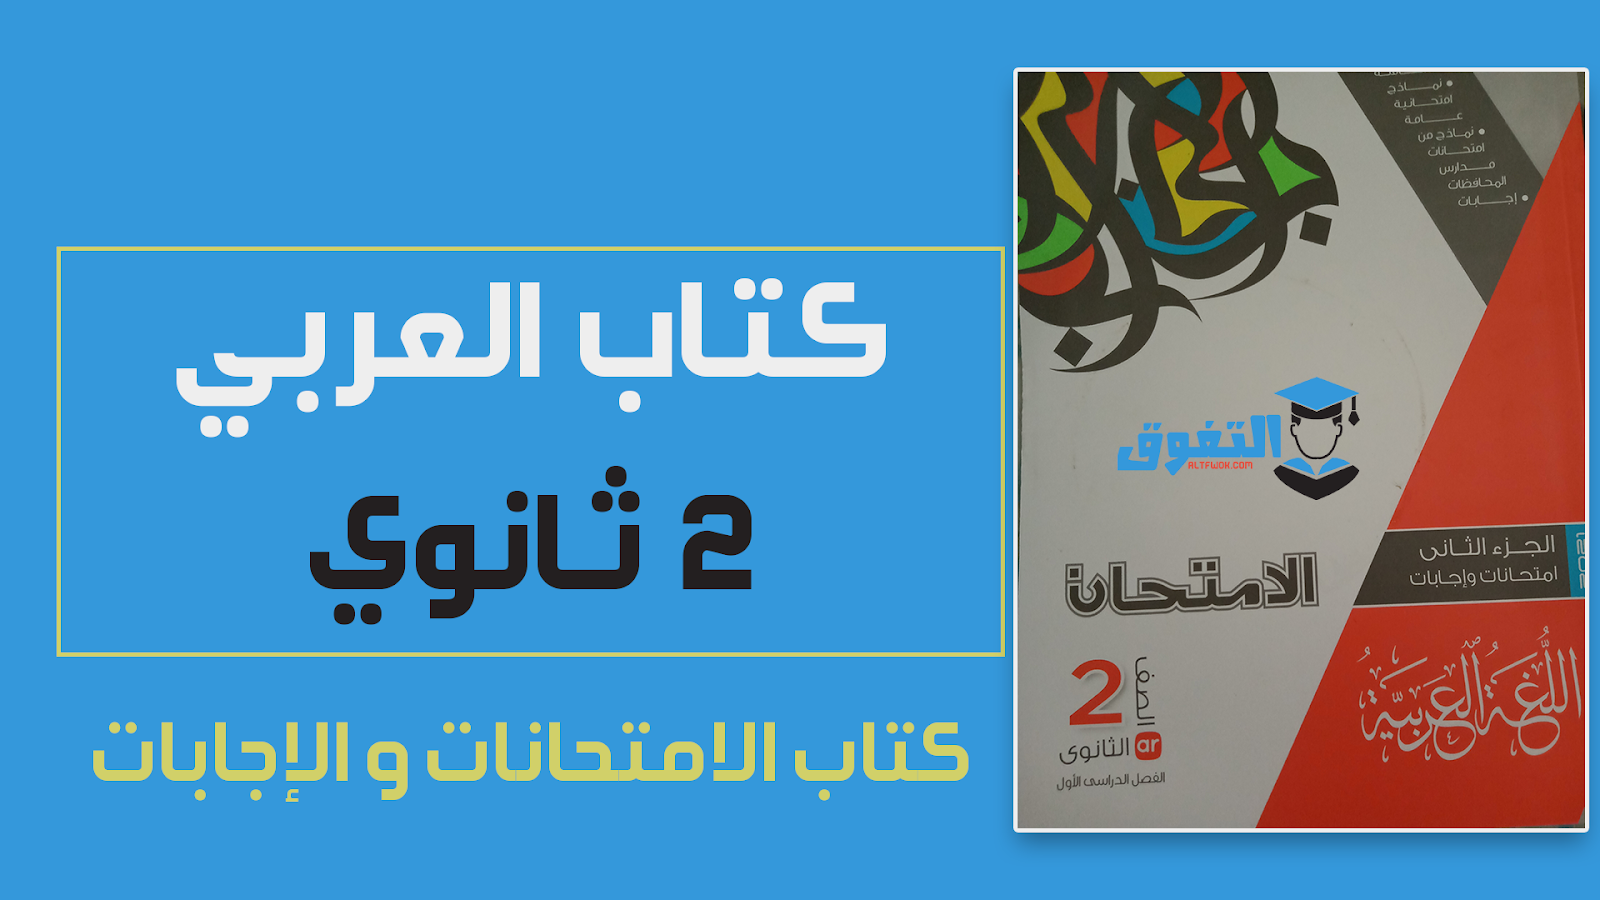 تحميل كتاب الإمتحان فى اللغة العربية pdf (كتاب الإمتحانات والأسئلة ) للصف الثاني الثانوي الترم الأول 2021 (النسخة الجديدة)